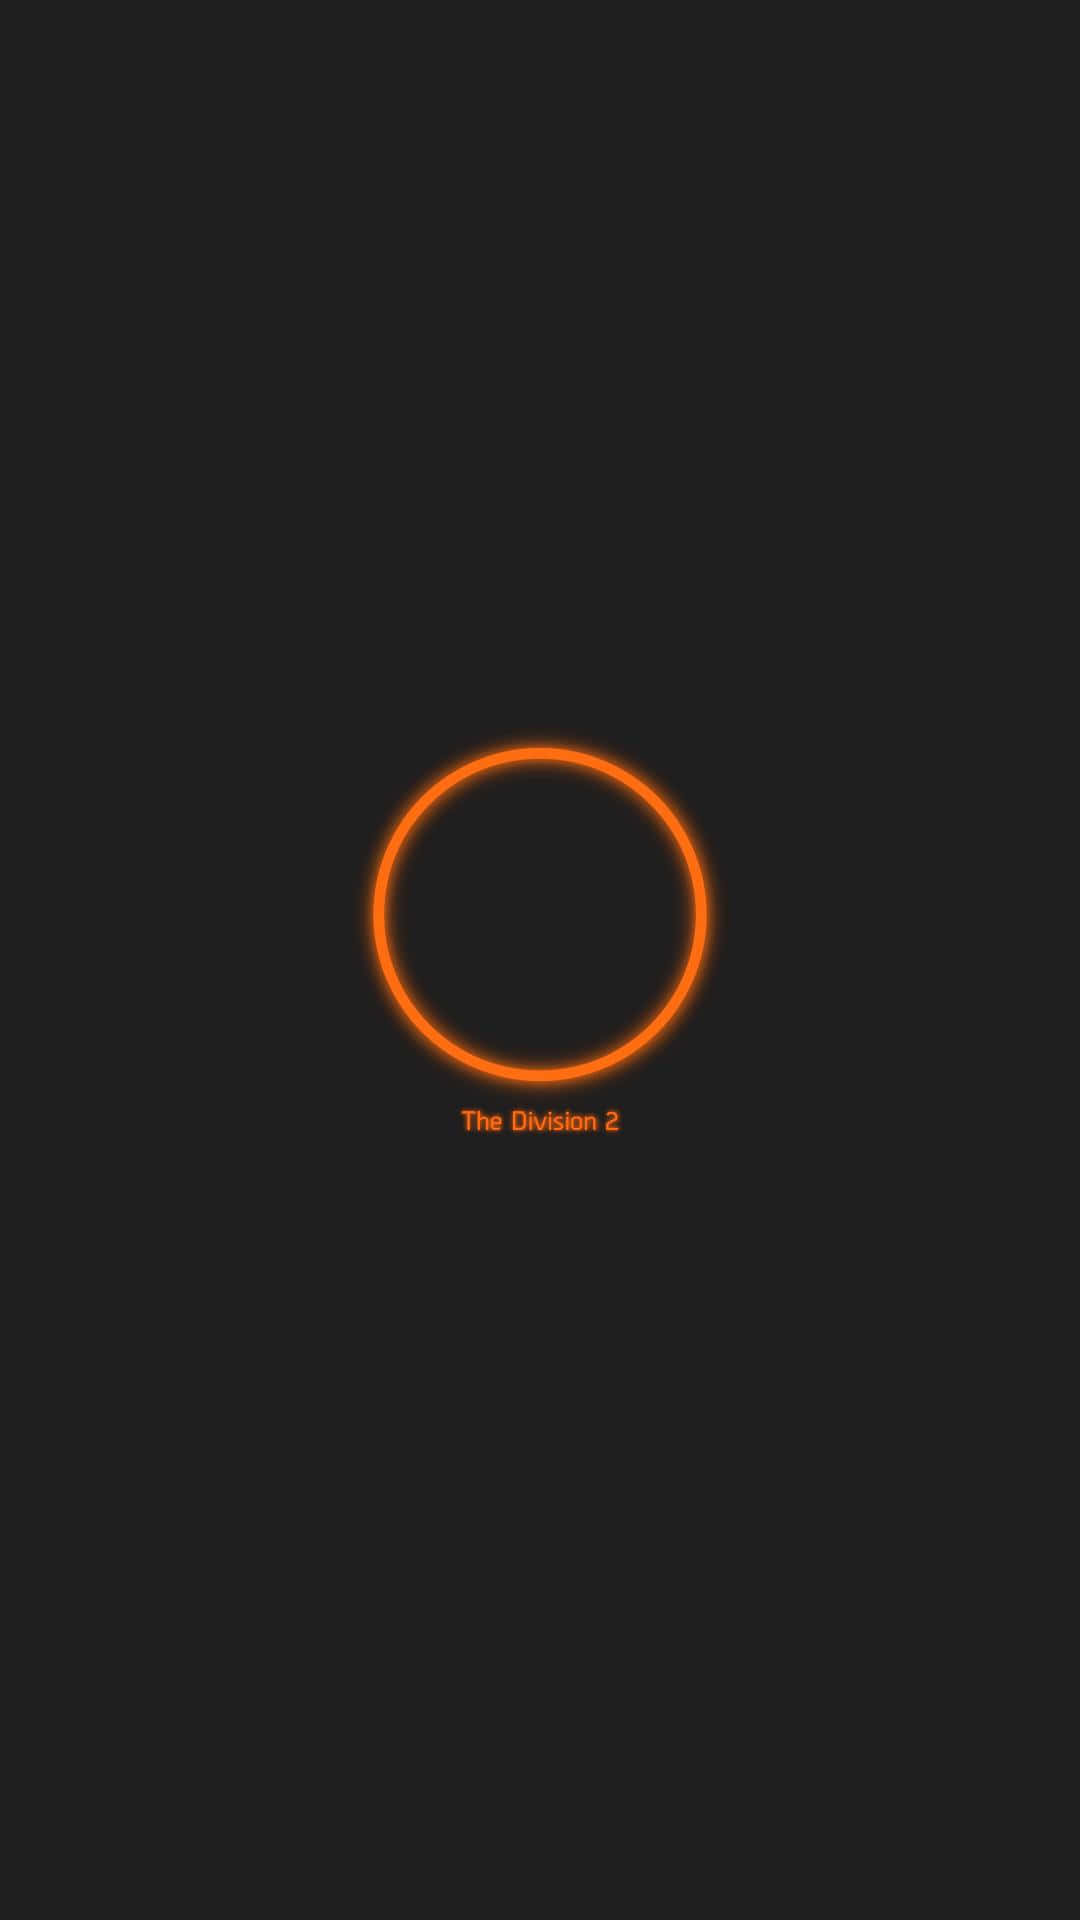 Orangelogo Android The Division Hintergrund